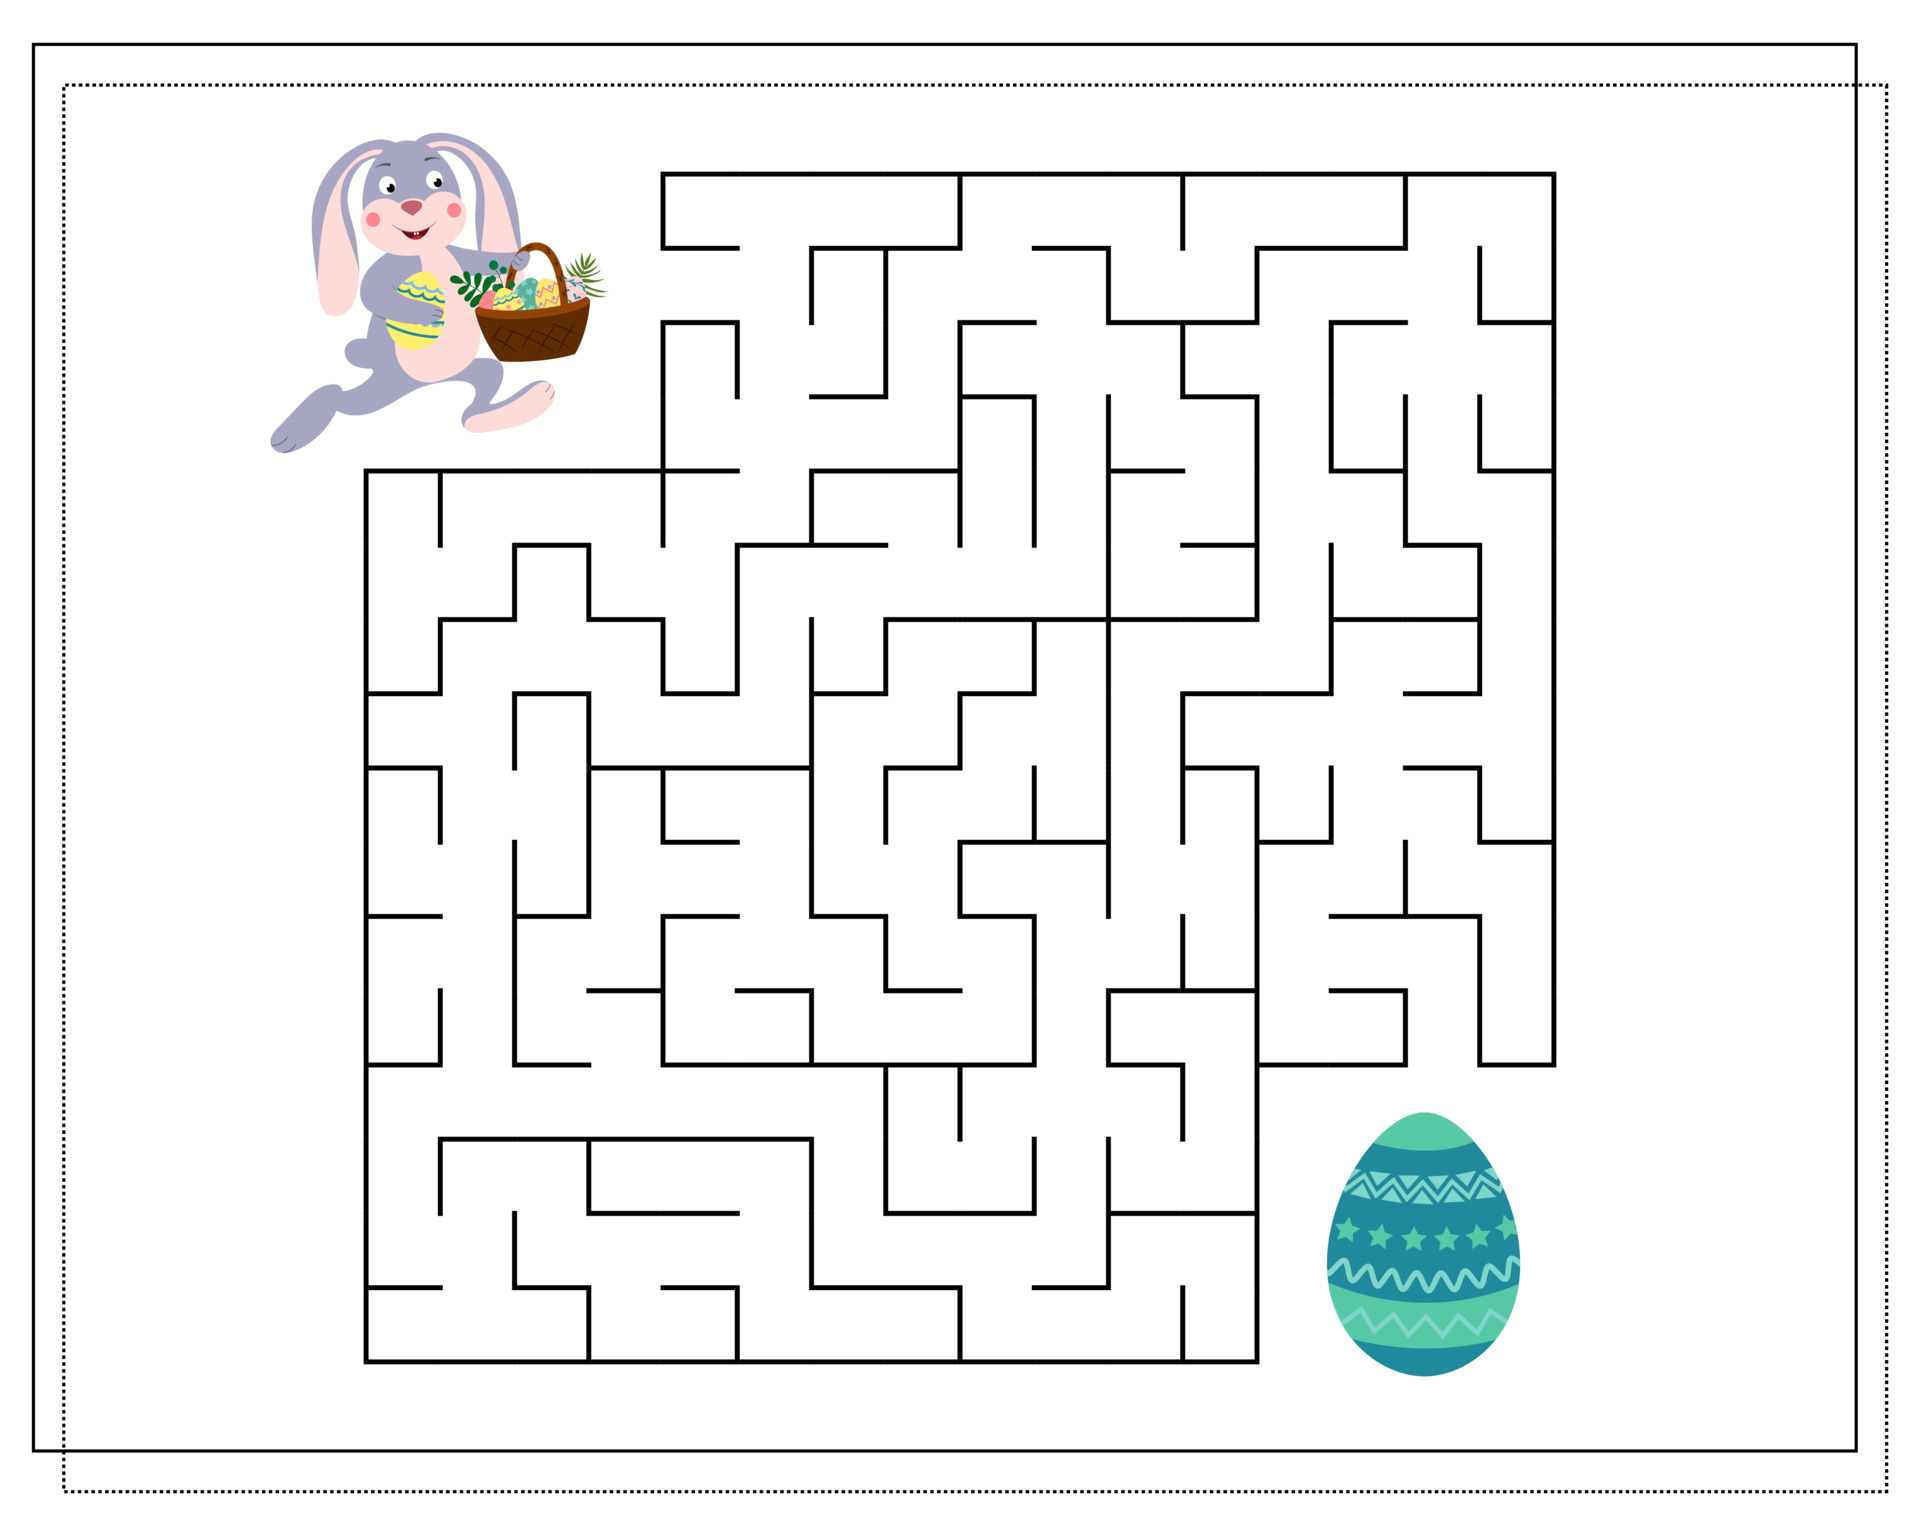 um jogo de lógica para crianças, atravesse o labirinto, um